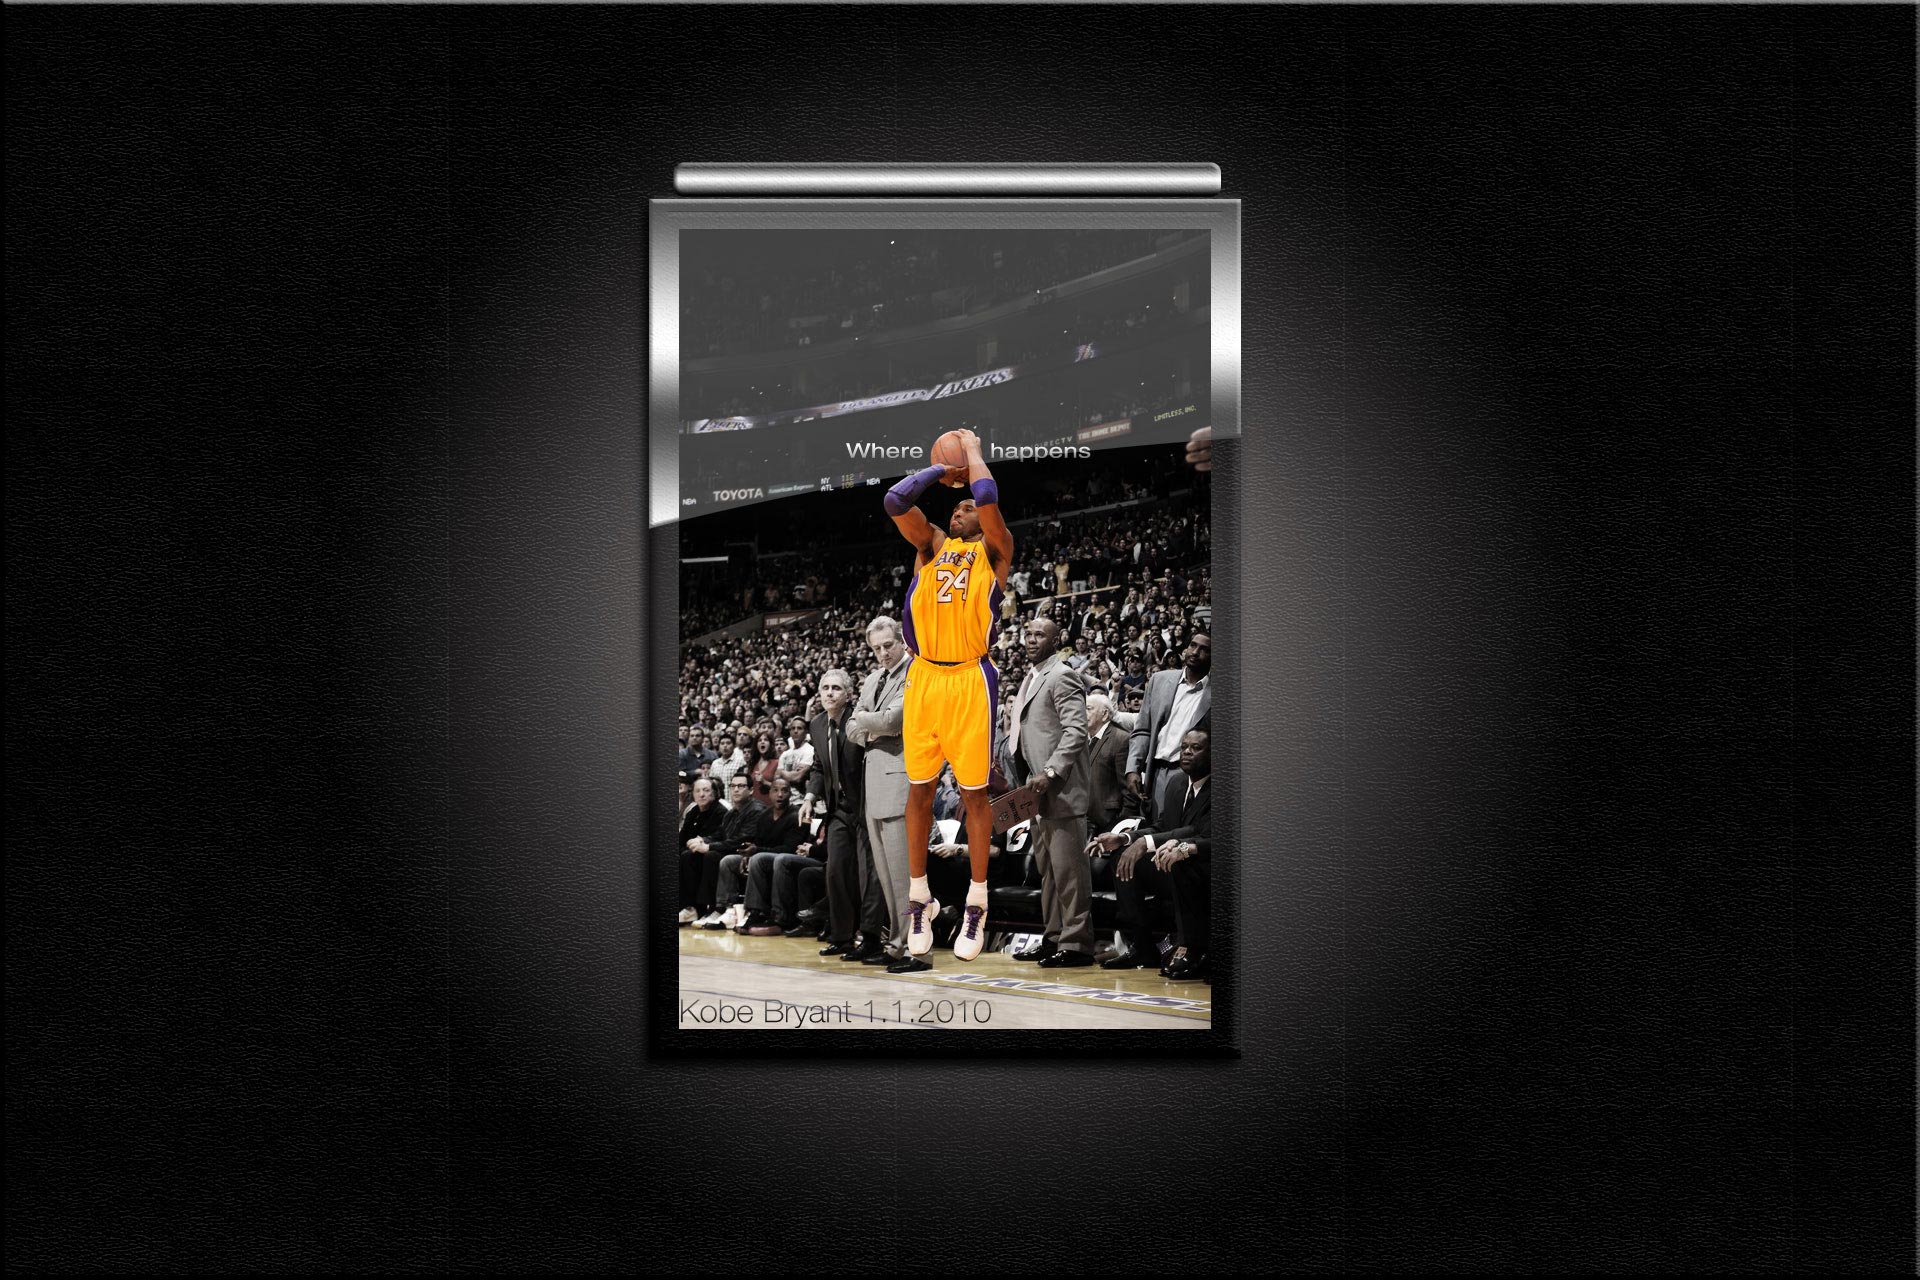 Kobe Bryant Game Winner 1.1.2010. wallpaper